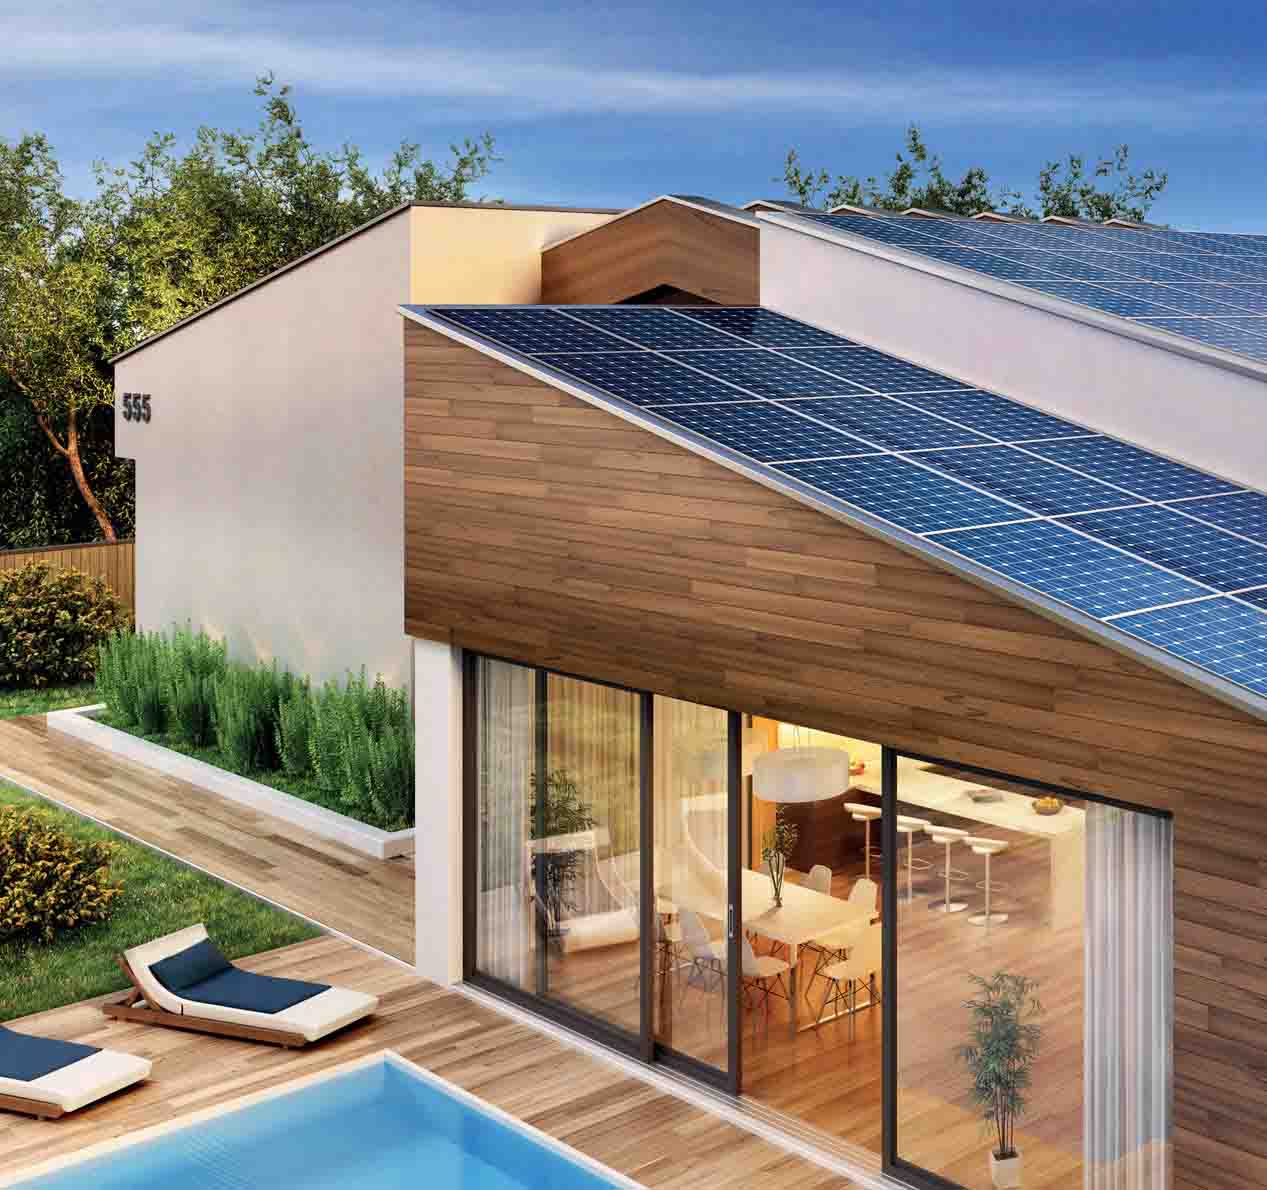 Pannelli Fotovoltaici - Benefici Solare Fotovoltaico